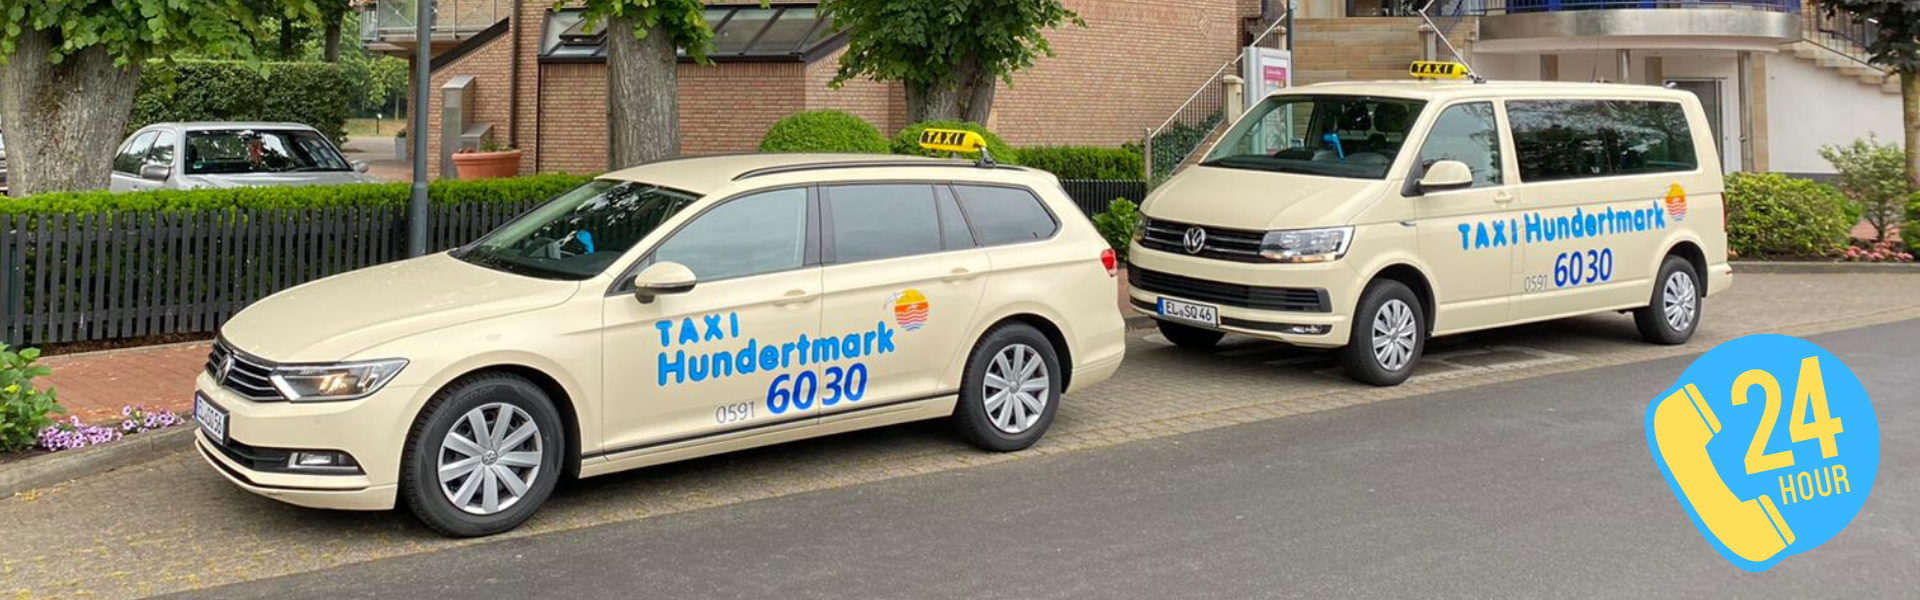 Taxi Hundertmark Lingen Ems Telefon 0591 - 6030